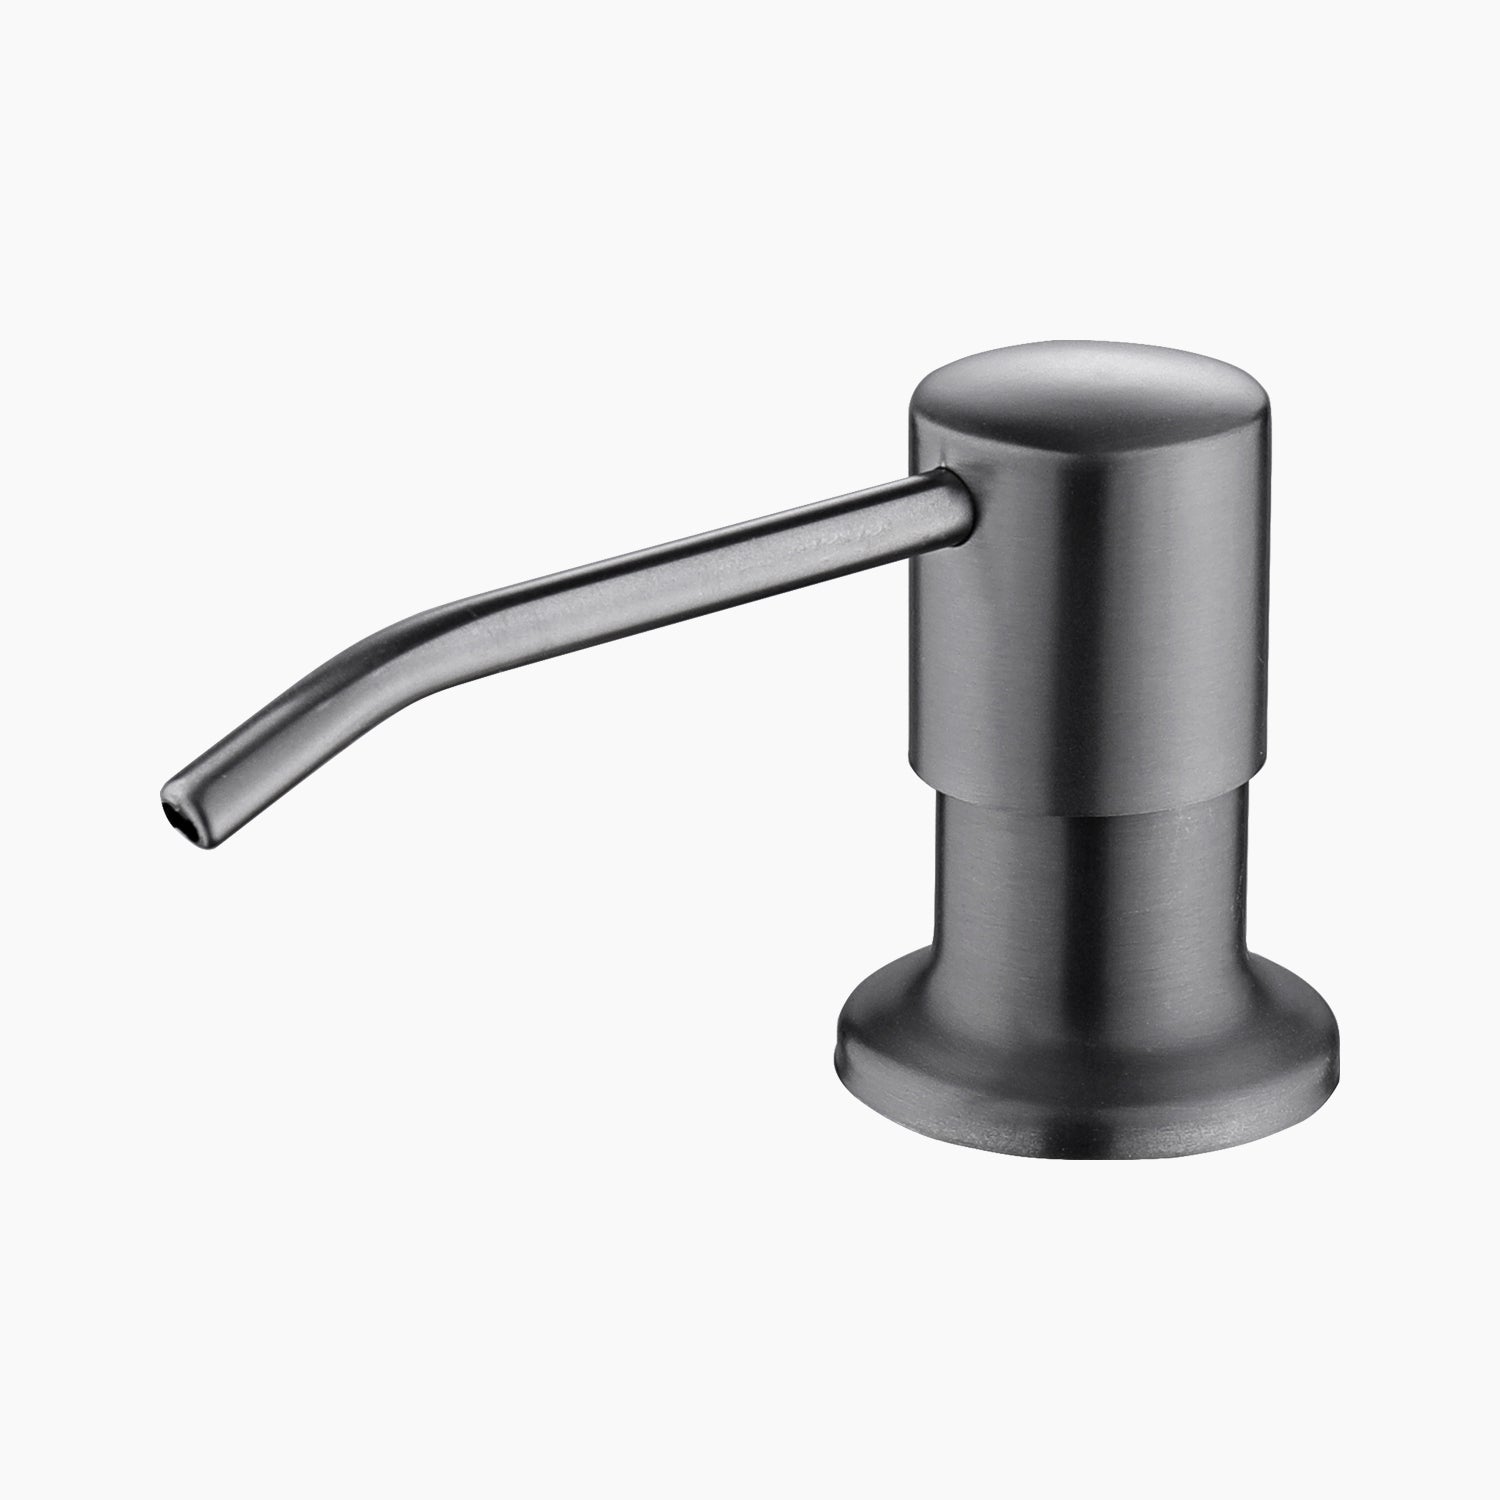 Lefton 360° swivel soap dispenser for kitchen sink KSD2201